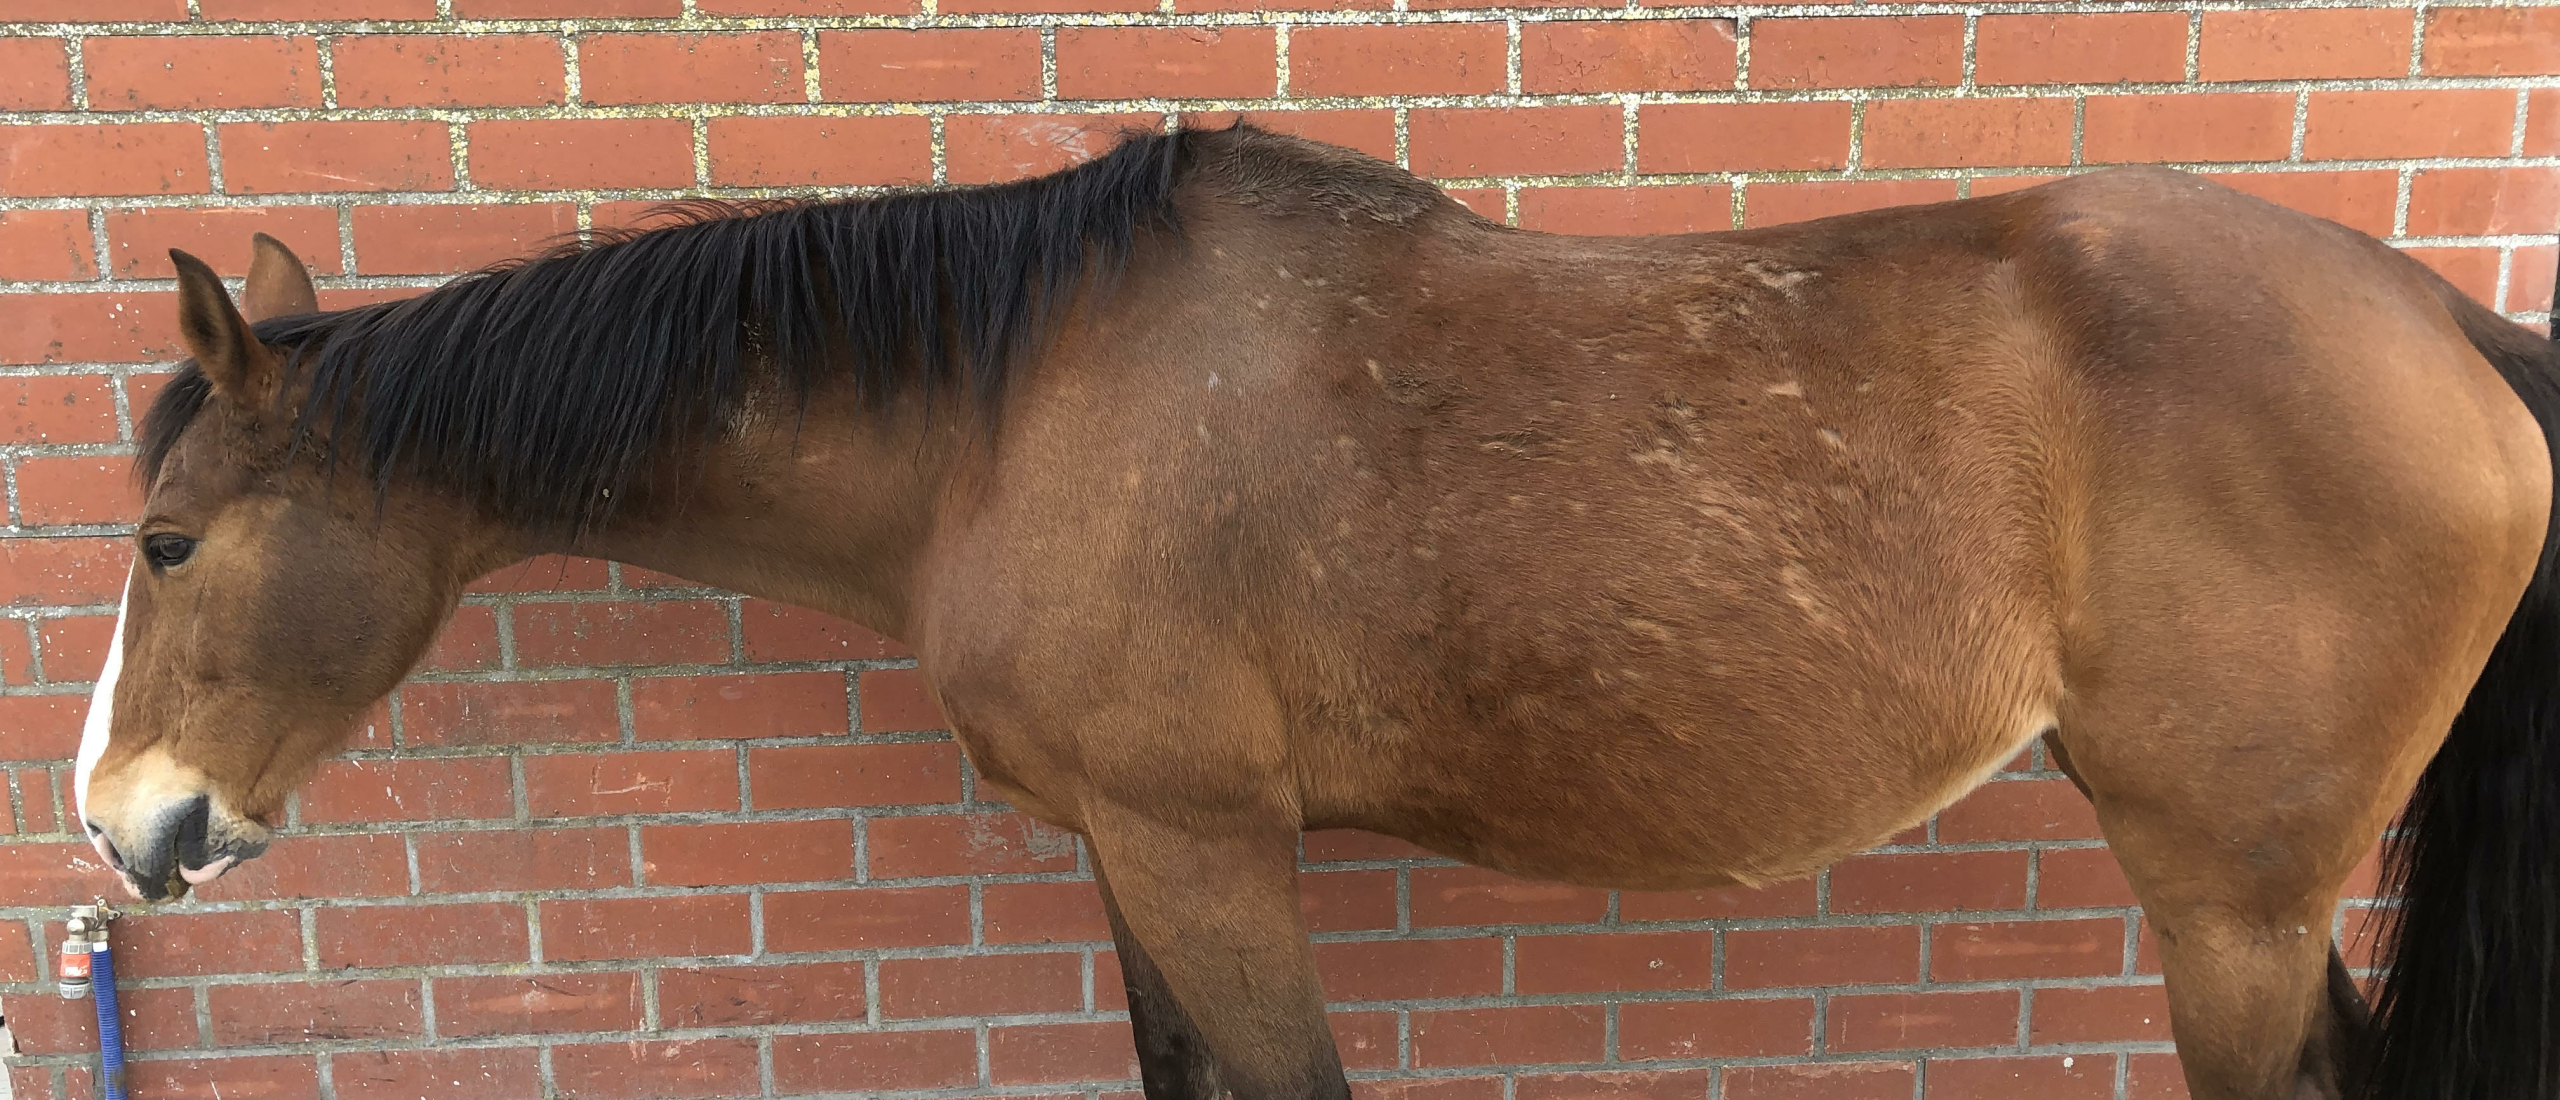 Verminous arteritis (Wormaneurysma): Relatief onbekend gevaar voor je paard